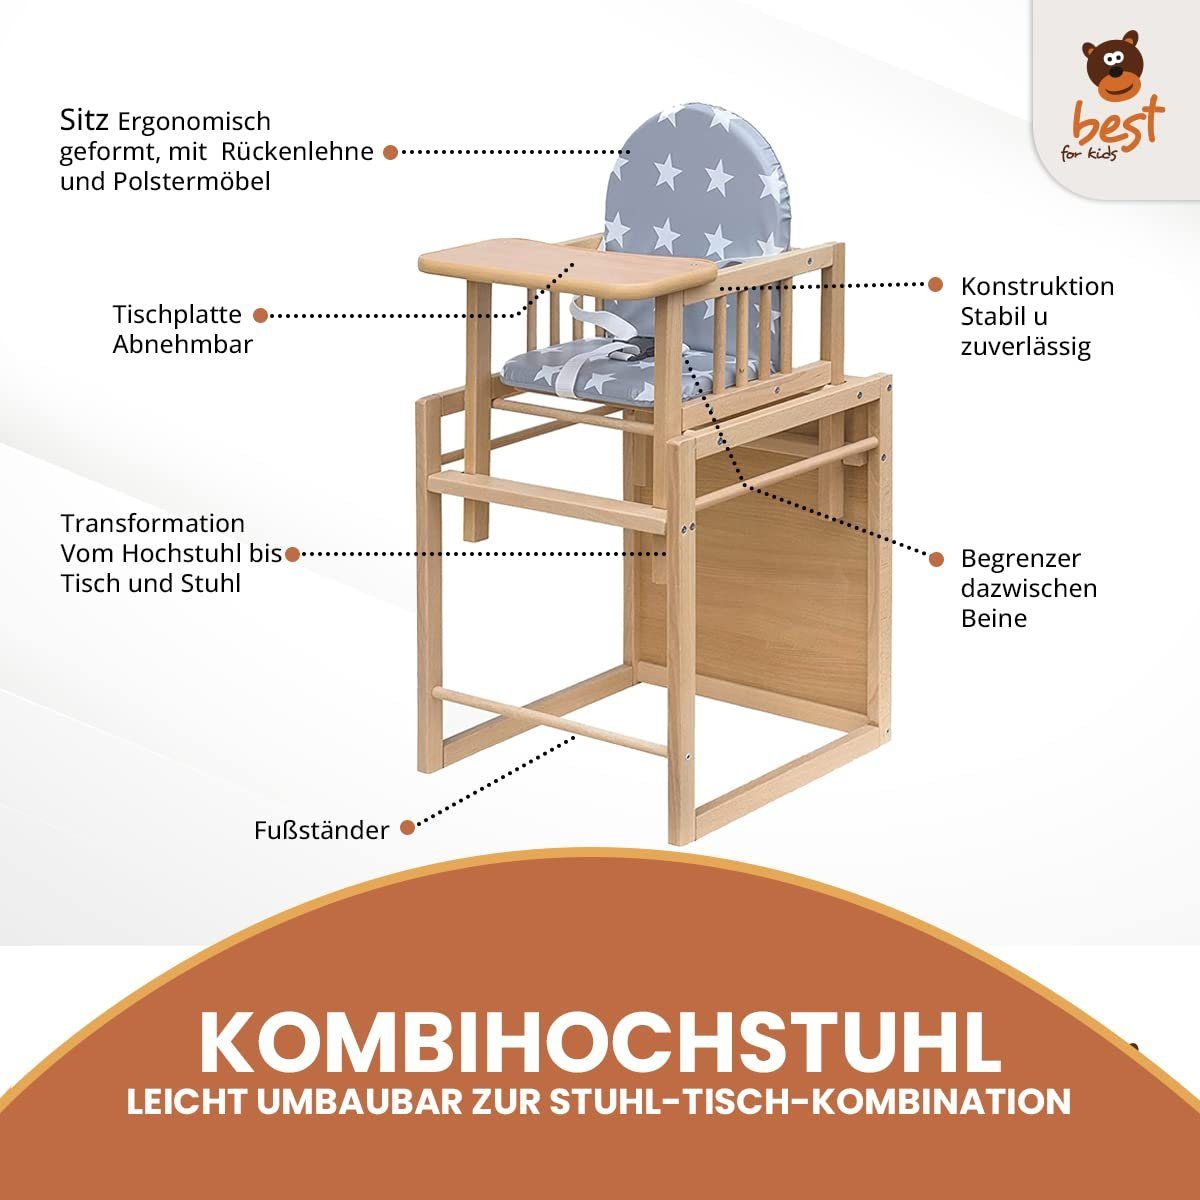 Best for Kids Kombihochstuhl zur Victoria, umbaubar leicht Stuhl-Tisch-Kombination